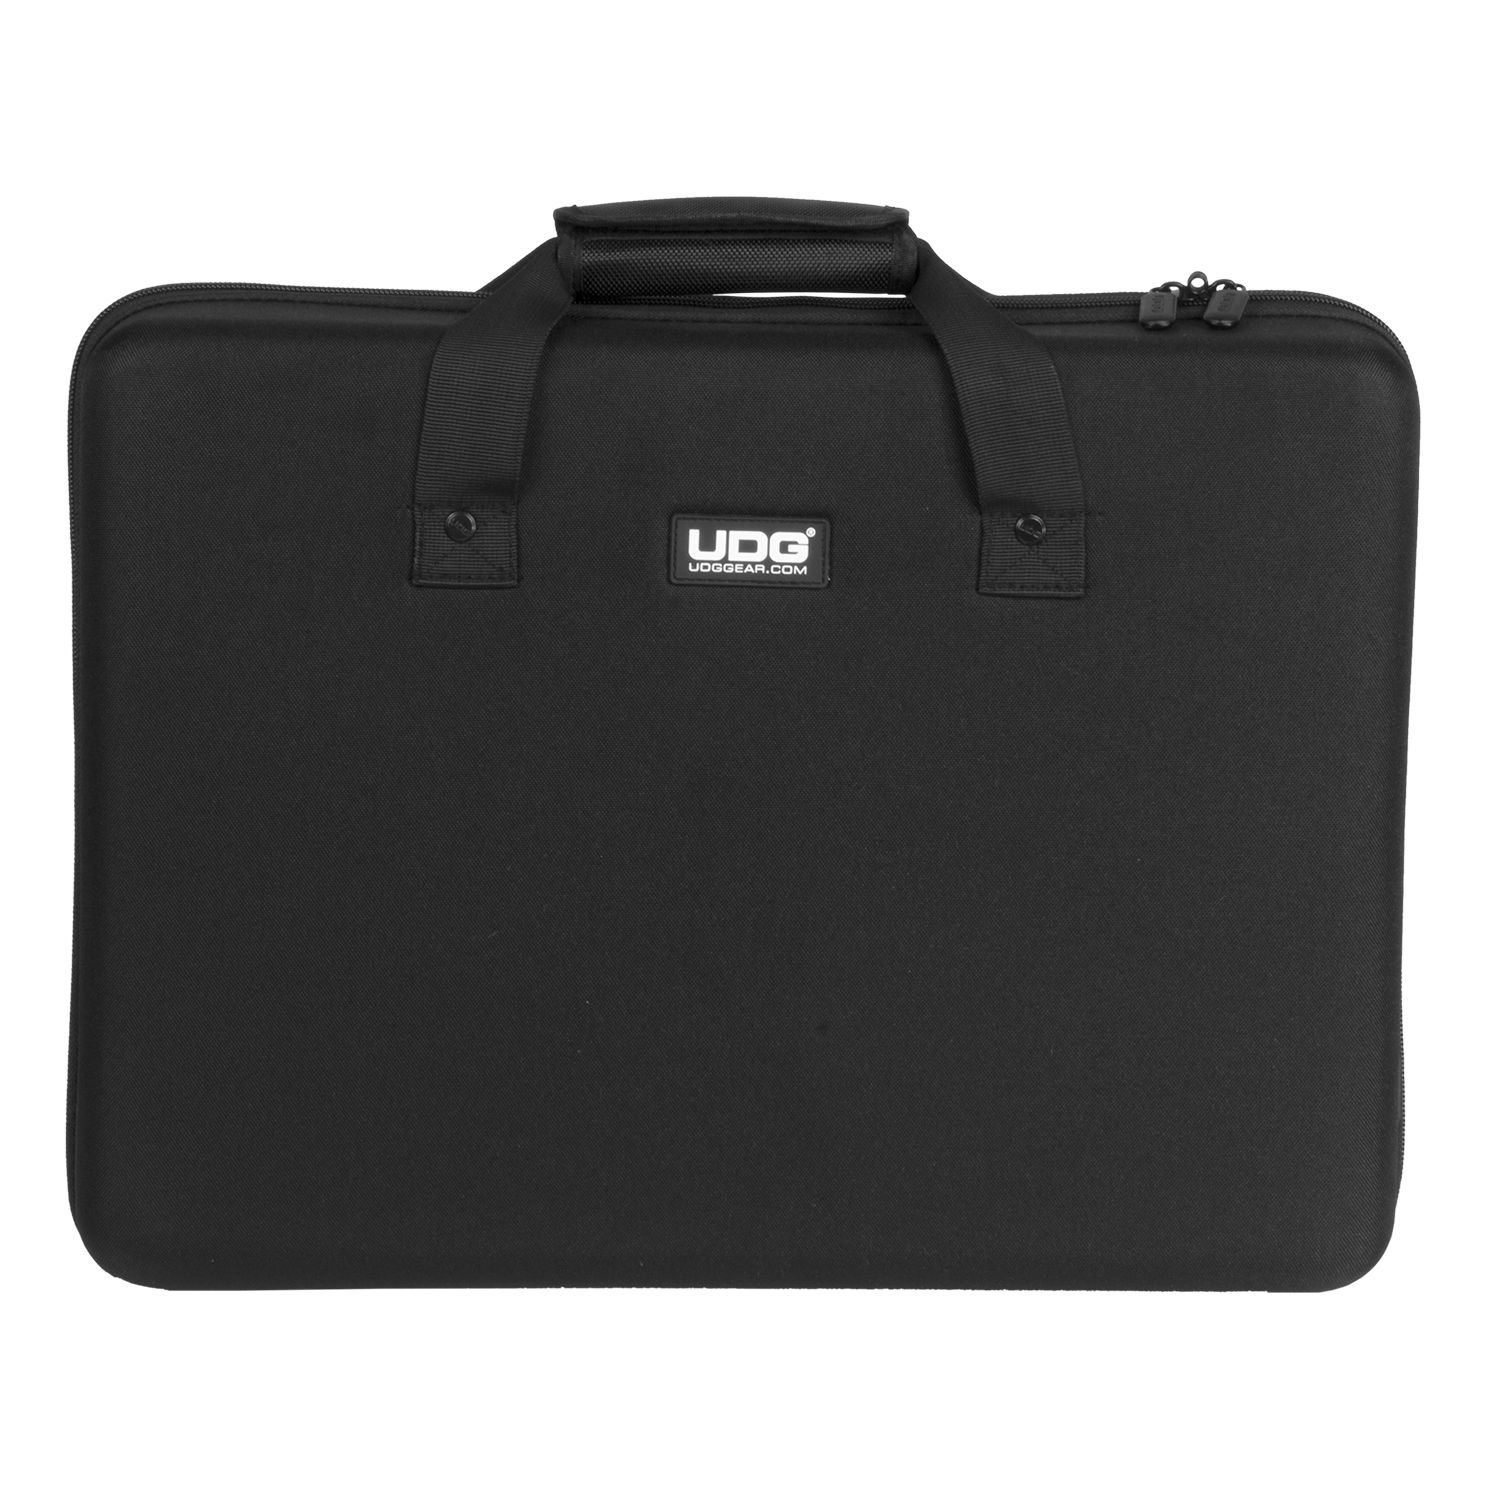 U8301BL MK2 Controller Hardcase By UDG Available @HyTek Electronics